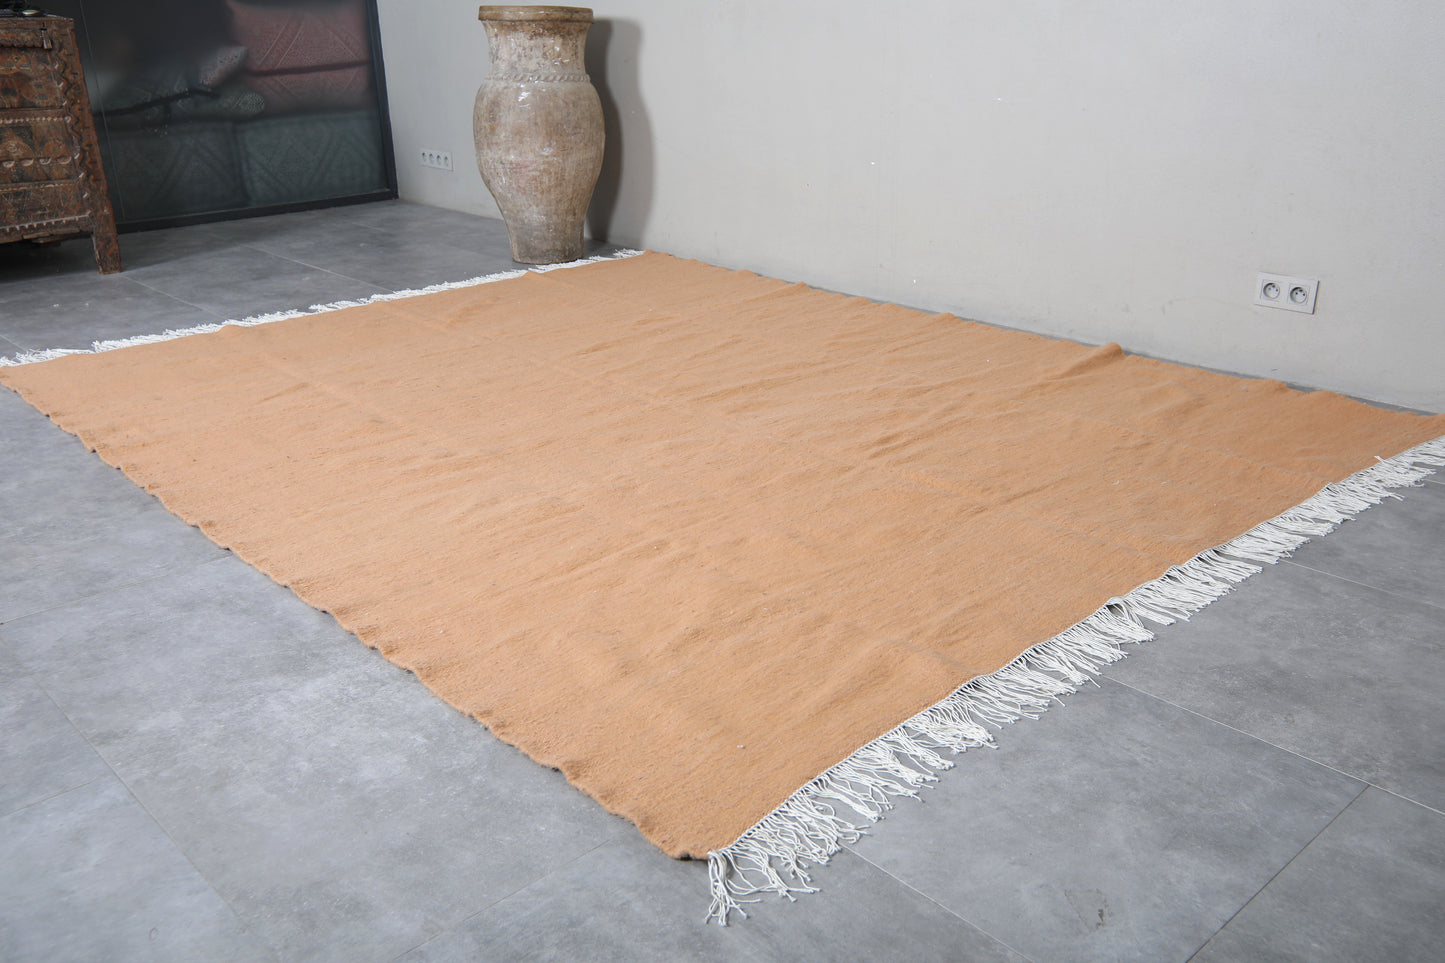 Moroccan rug 7.8 X 9.8 Feet